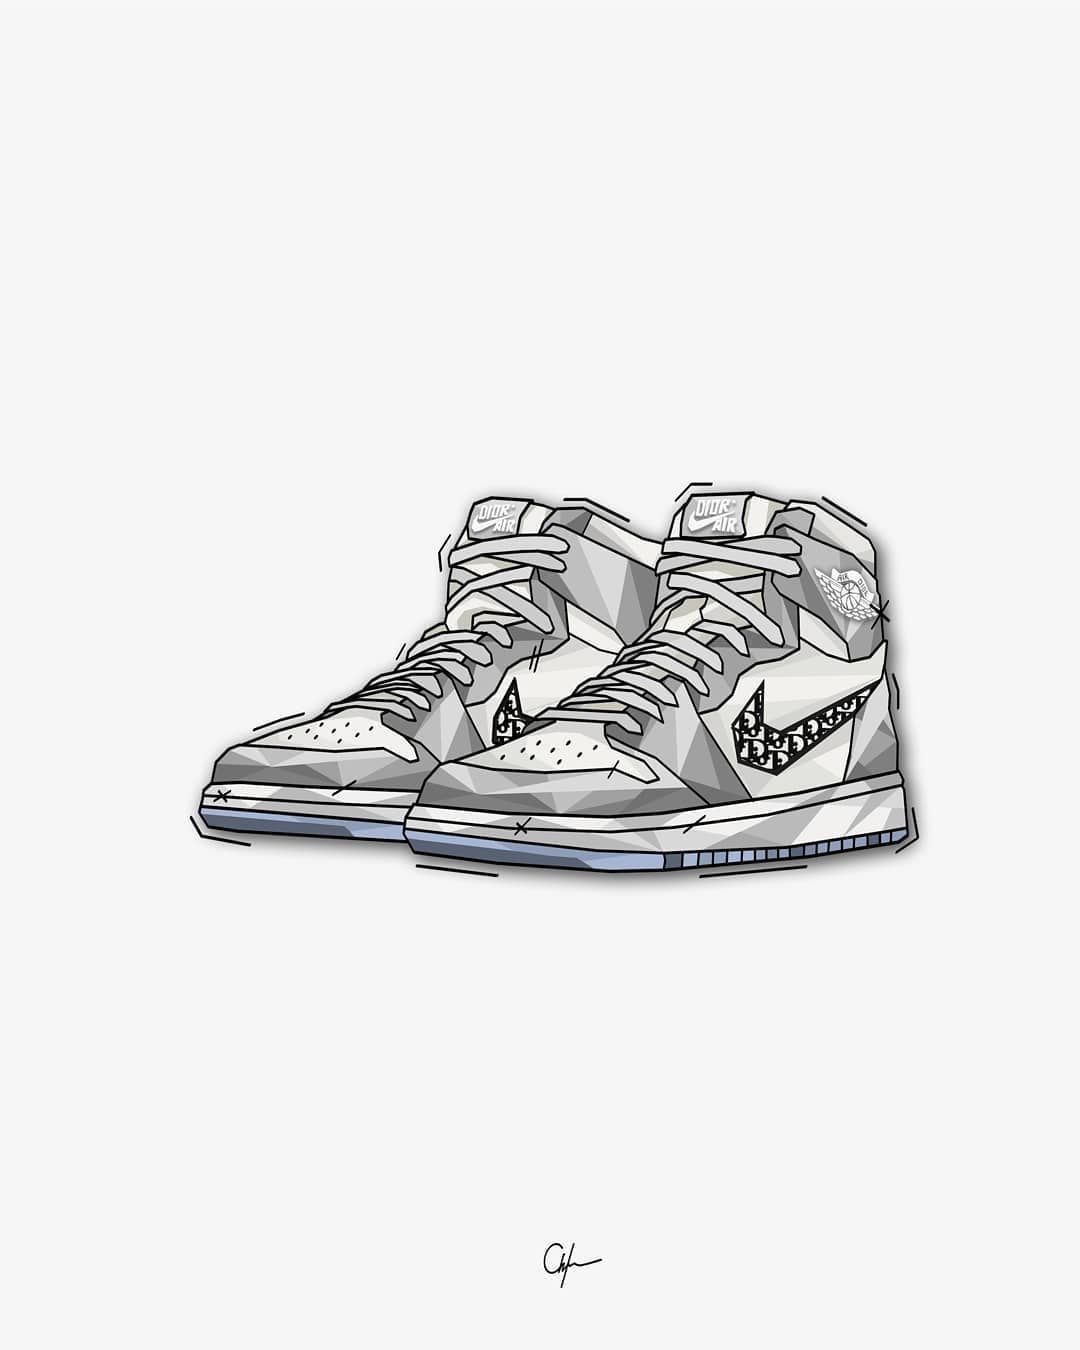 Dior x Nike Air Jordan 1. Art .com